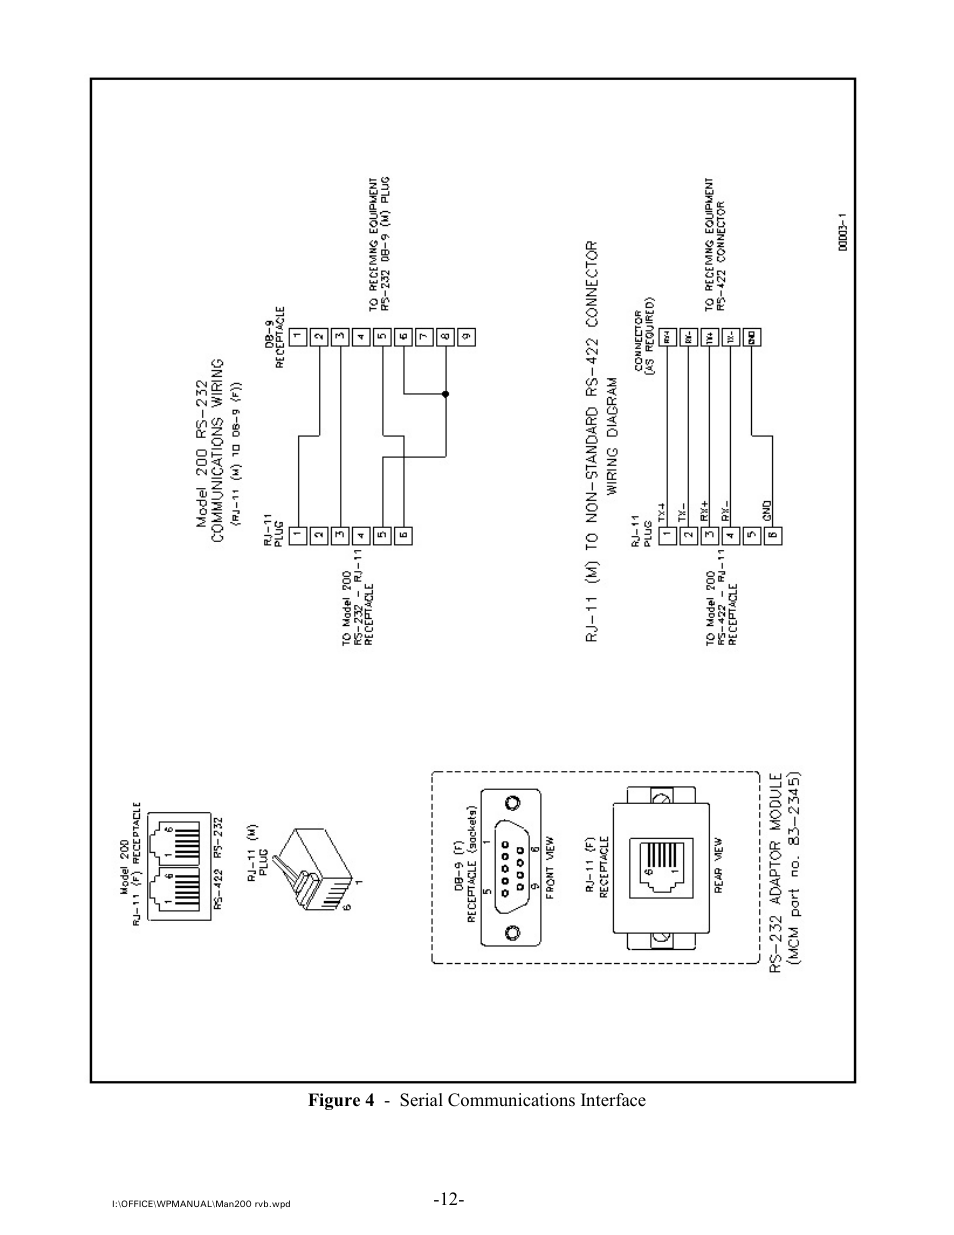 Intek 200 User Manual | Page 14 / 27